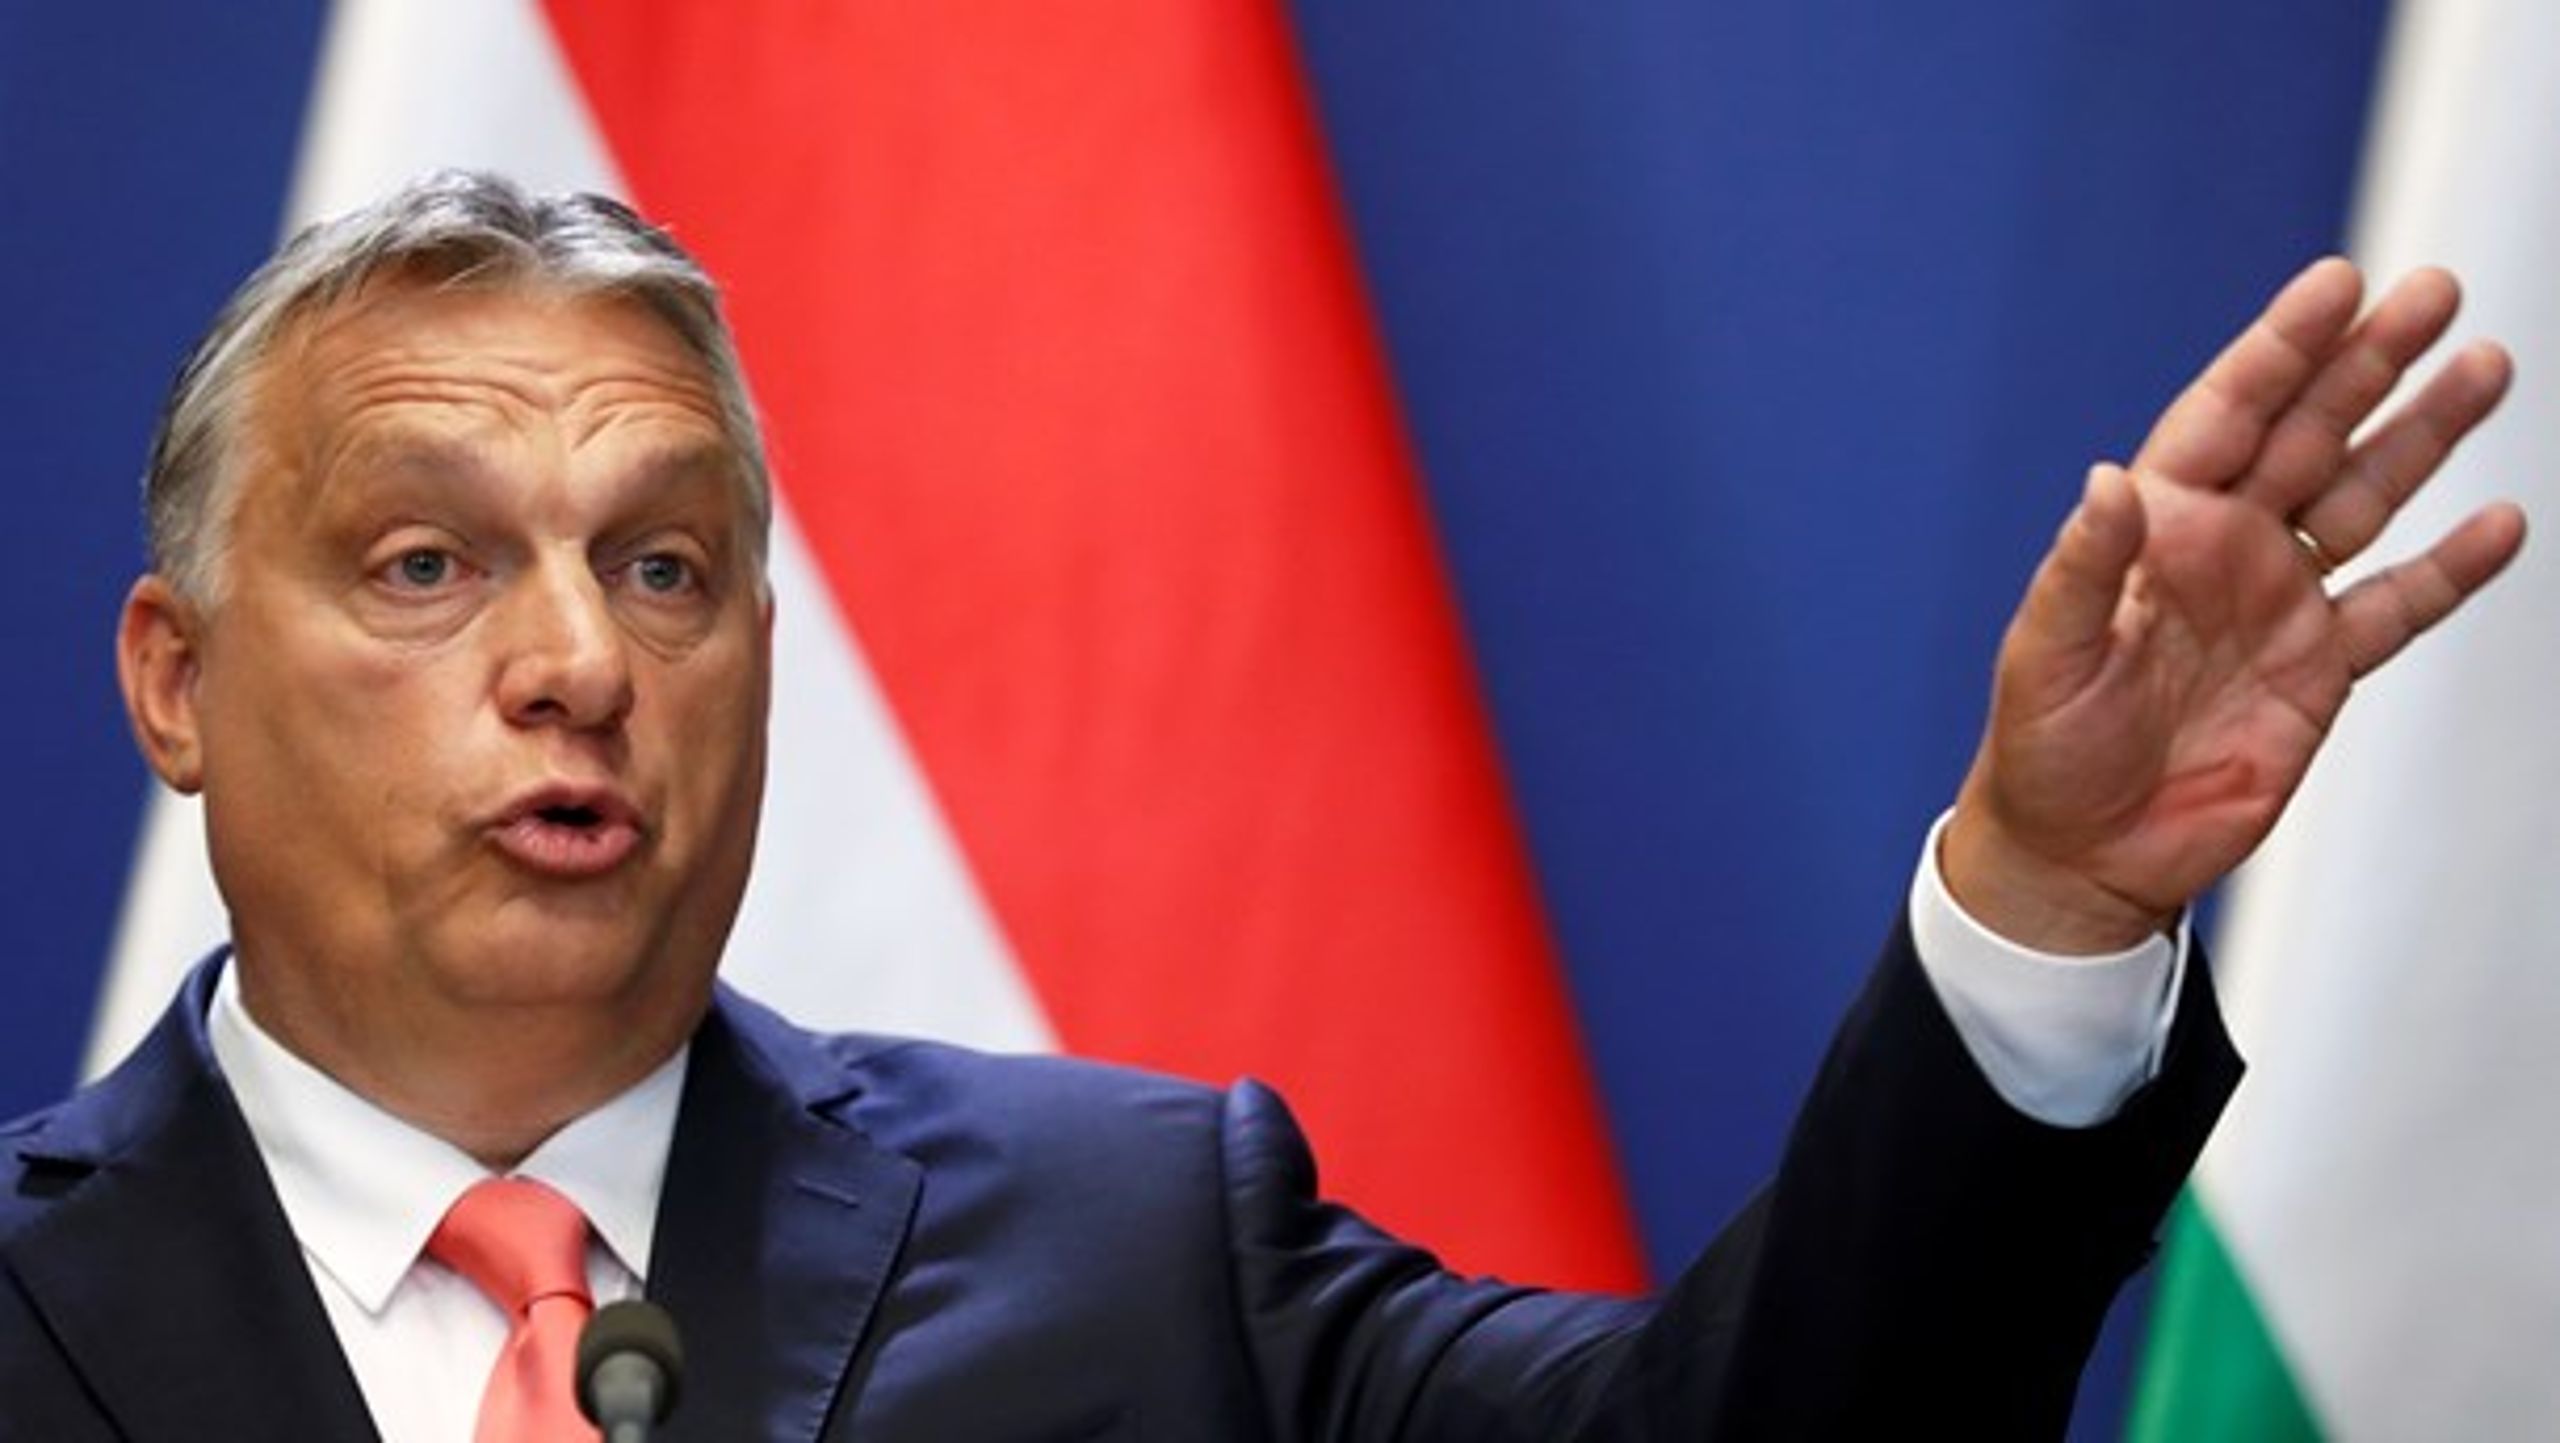 Under coronakrisen har parlamentet i Ungarn vedtaget en nødretslov, som giver Viktor Orbán magt til at lede per dekret på ubestemt tid, skriver tre socialdemokrater.